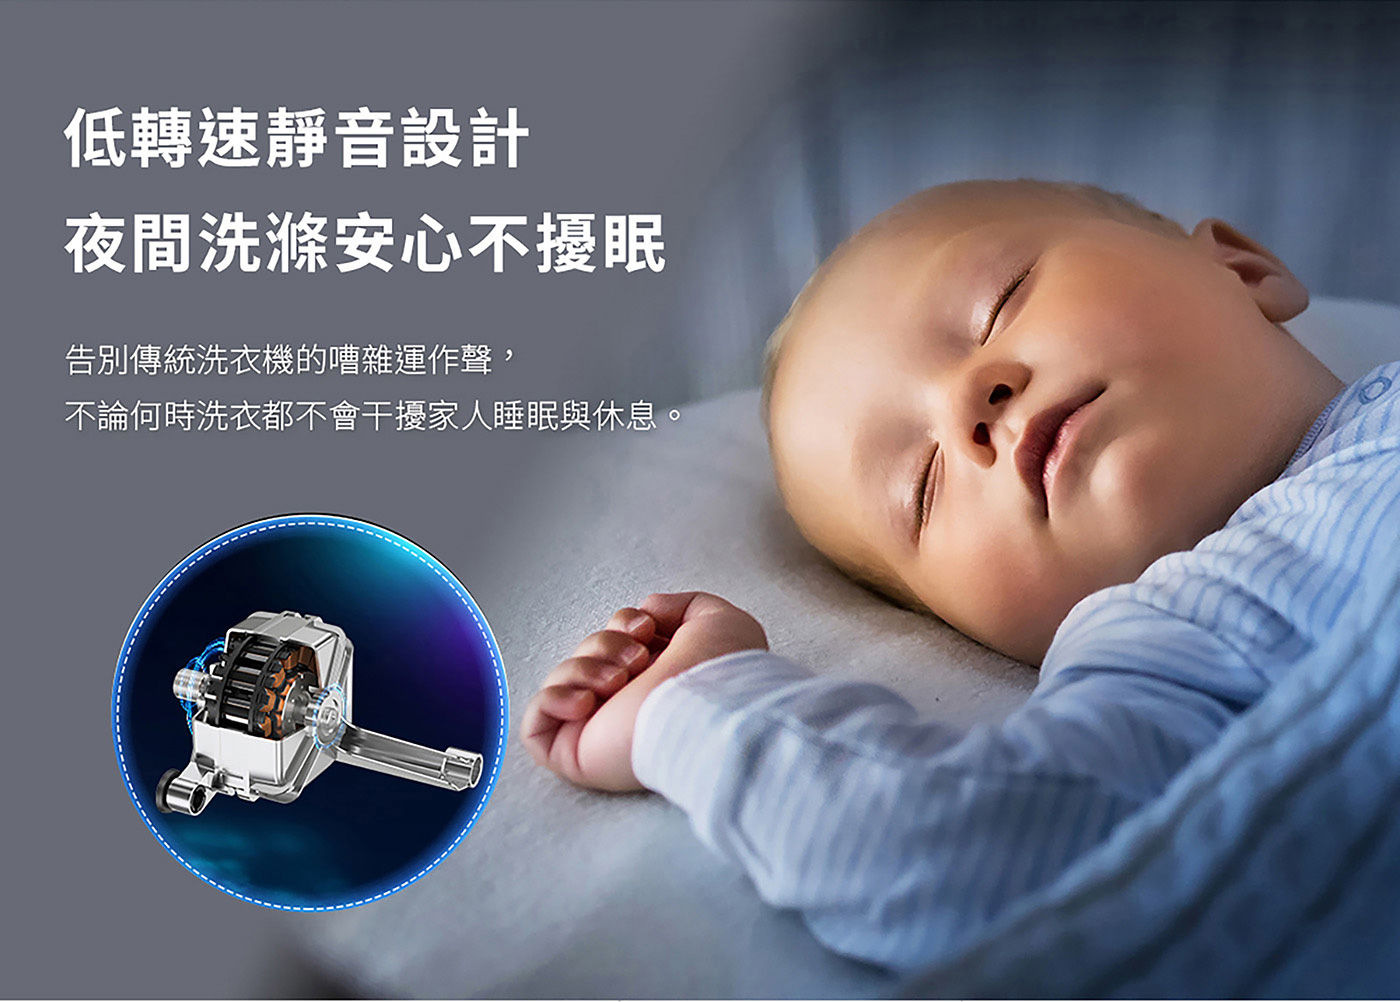 TCL 蒸洗脫烘變頻滾筒洗衣機 10/7公斤 低轉速靜音設計夜間洗滌安心不擾眠